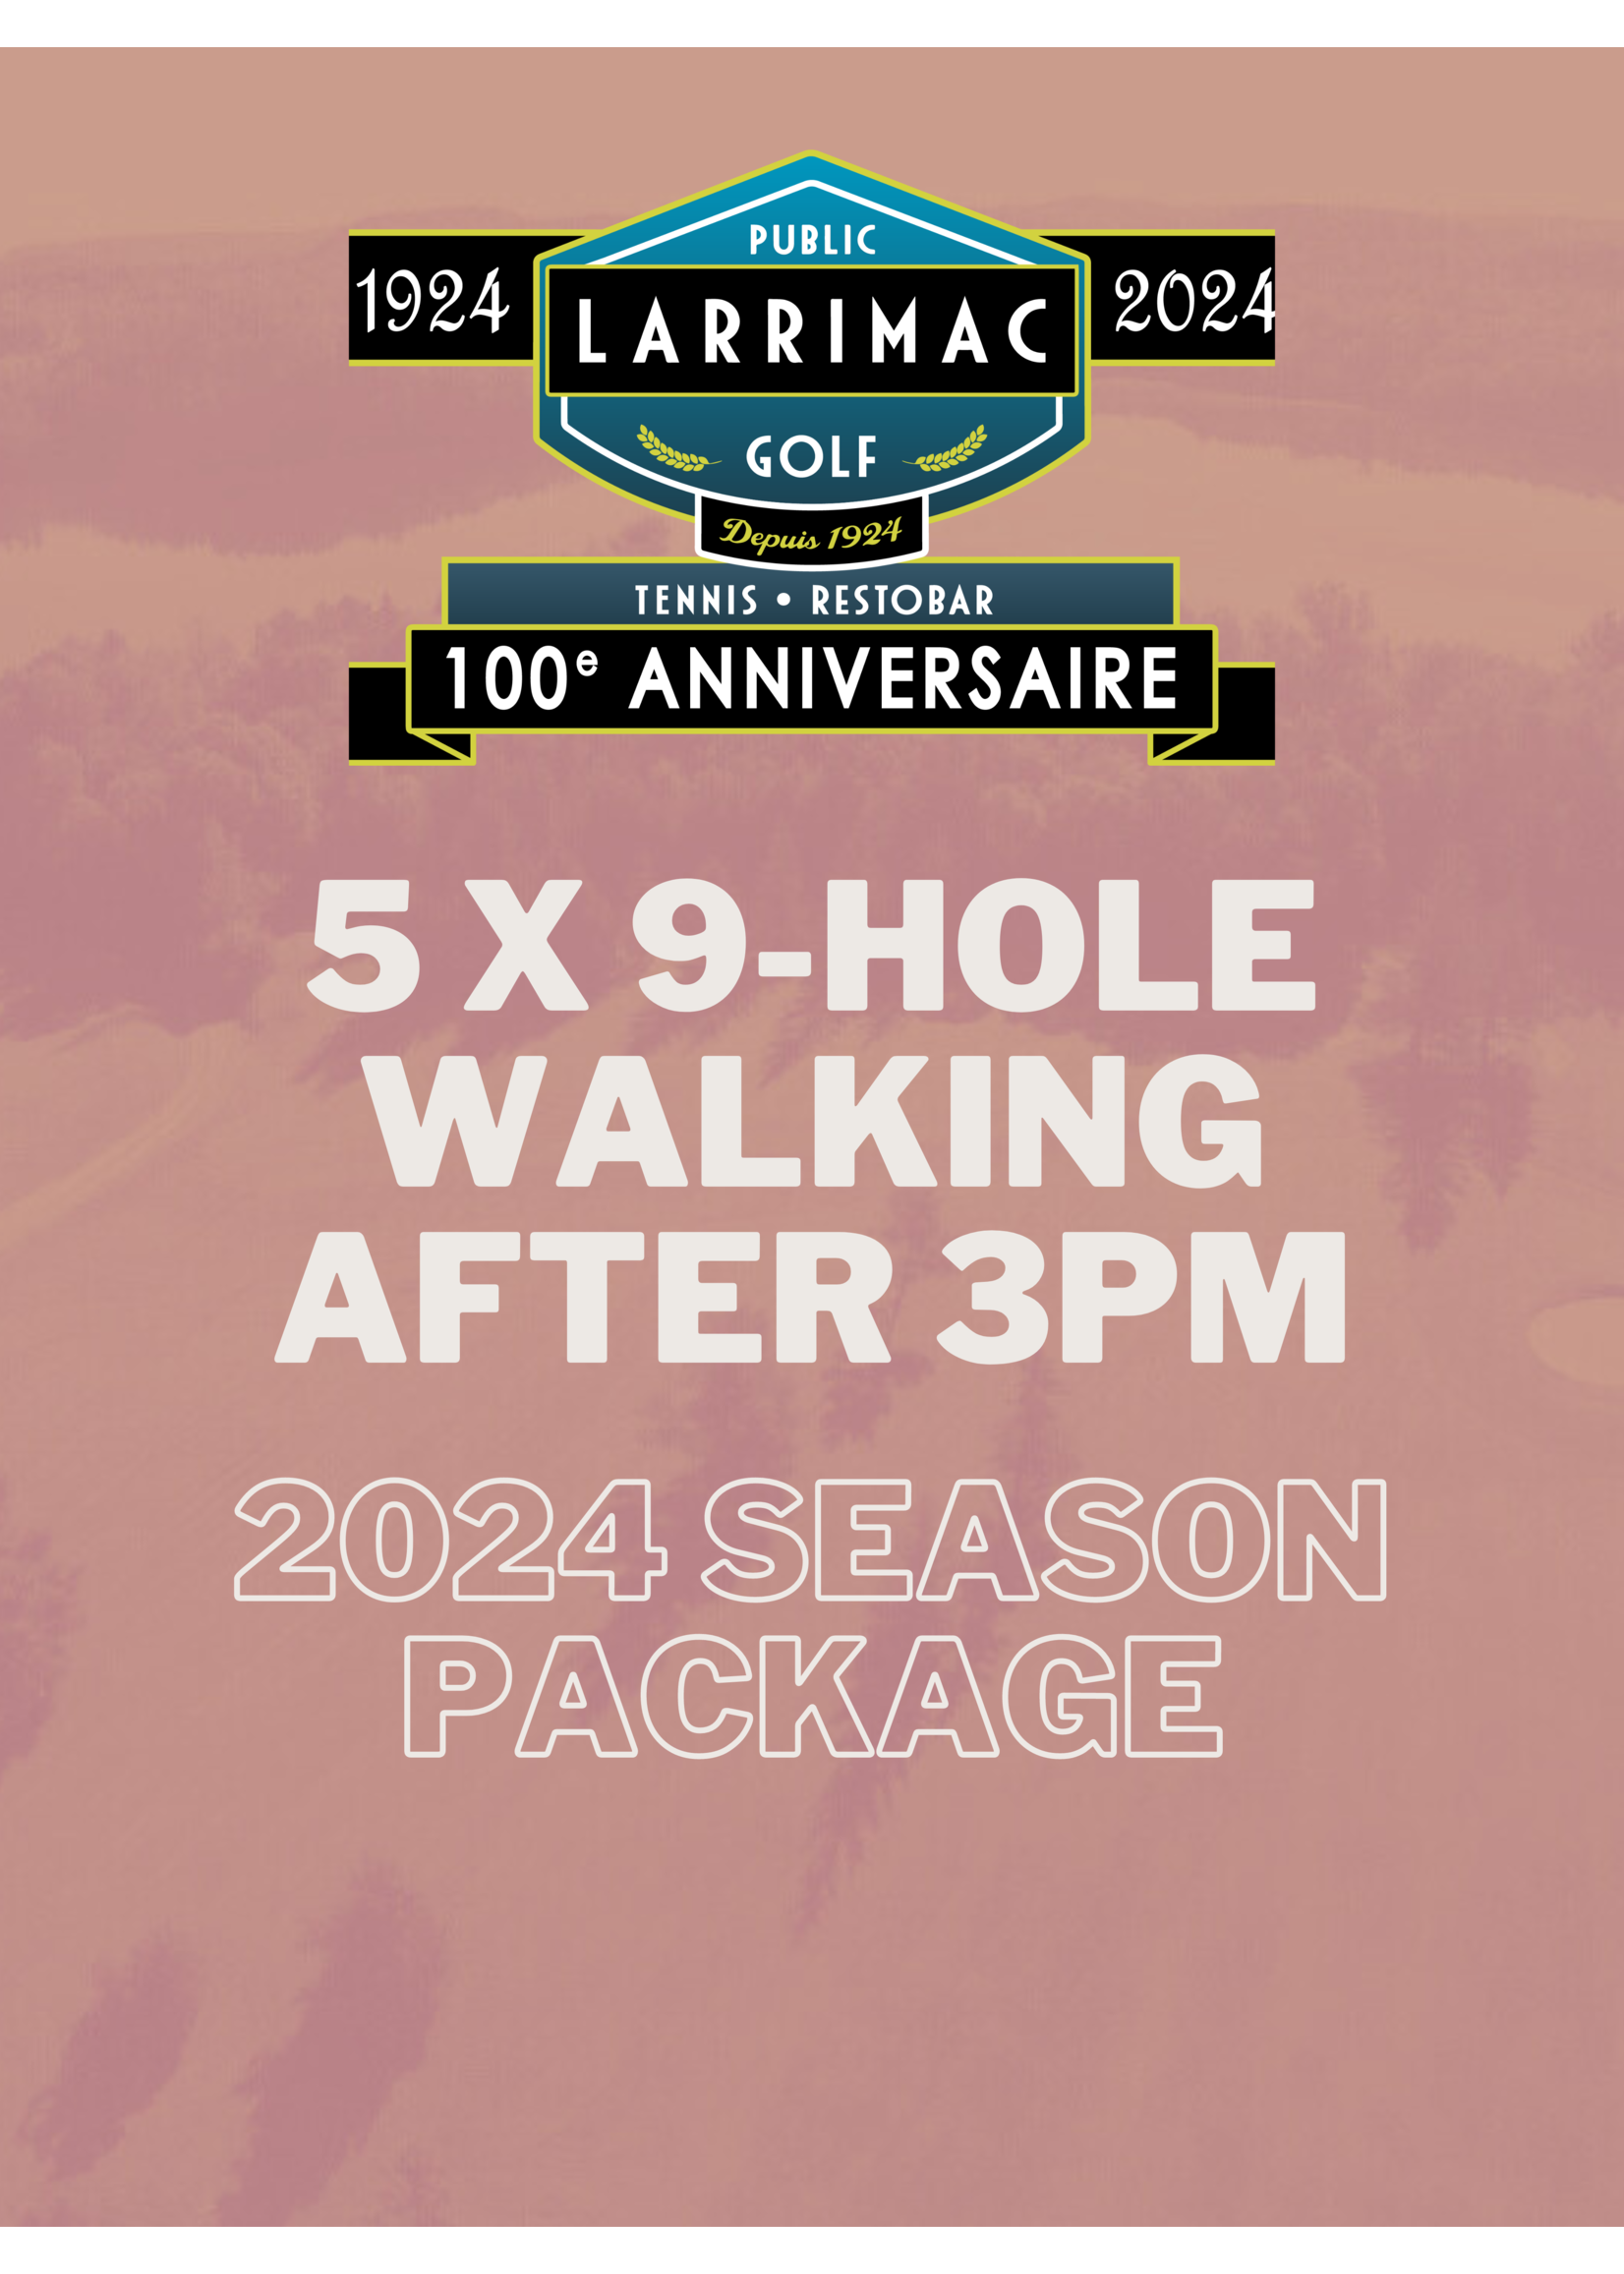 2024 packages 5x 9 Trous Forfait Marche Twilight Après 15h (Saison 2024 10% de réduction !)